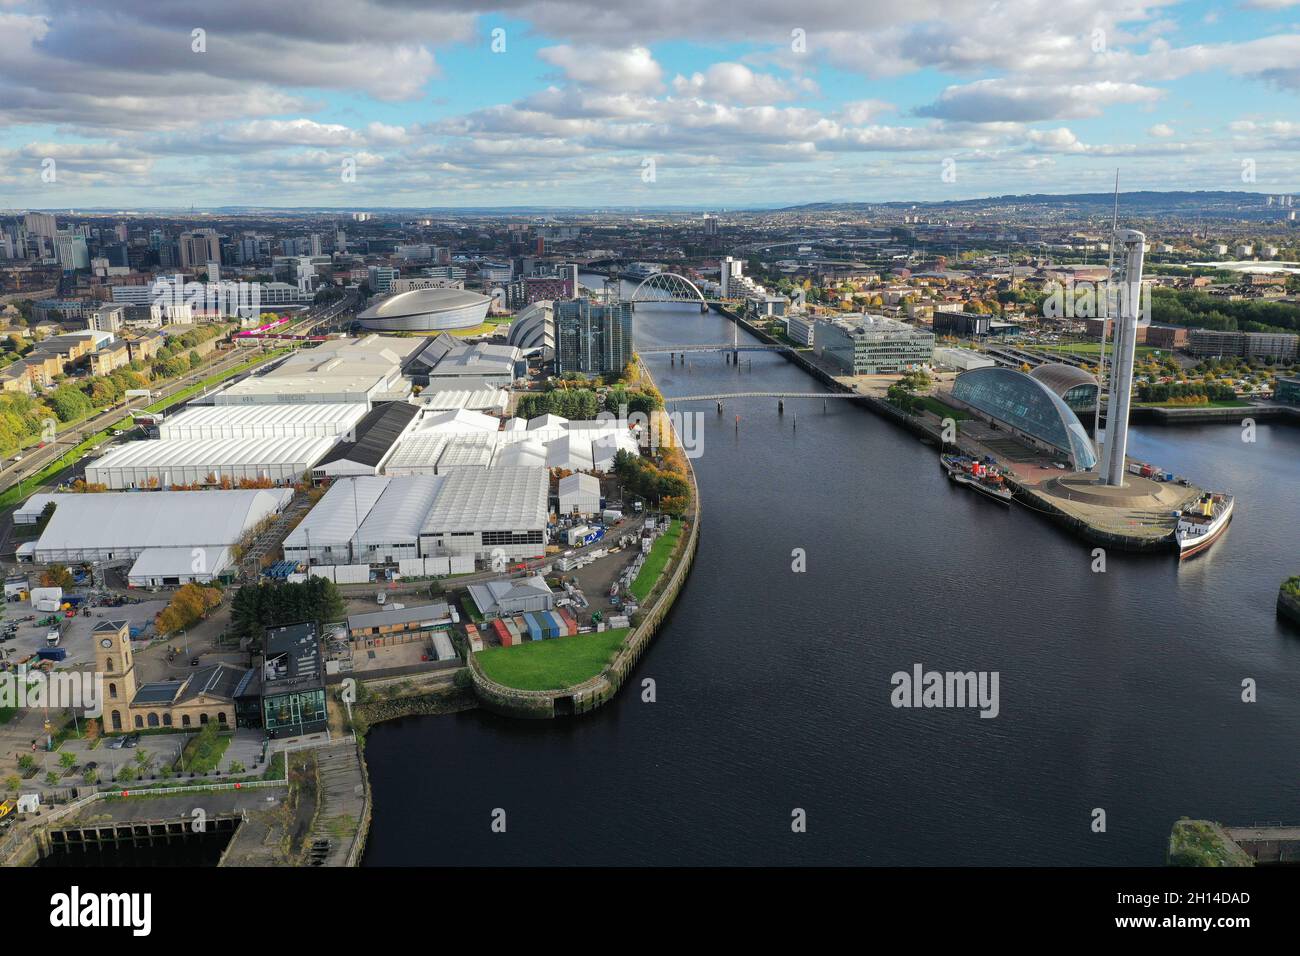 Vue aérienne du lieu de la COP26 de la SEC Glasgow avec des bâtiments temporaires Banque D'Images